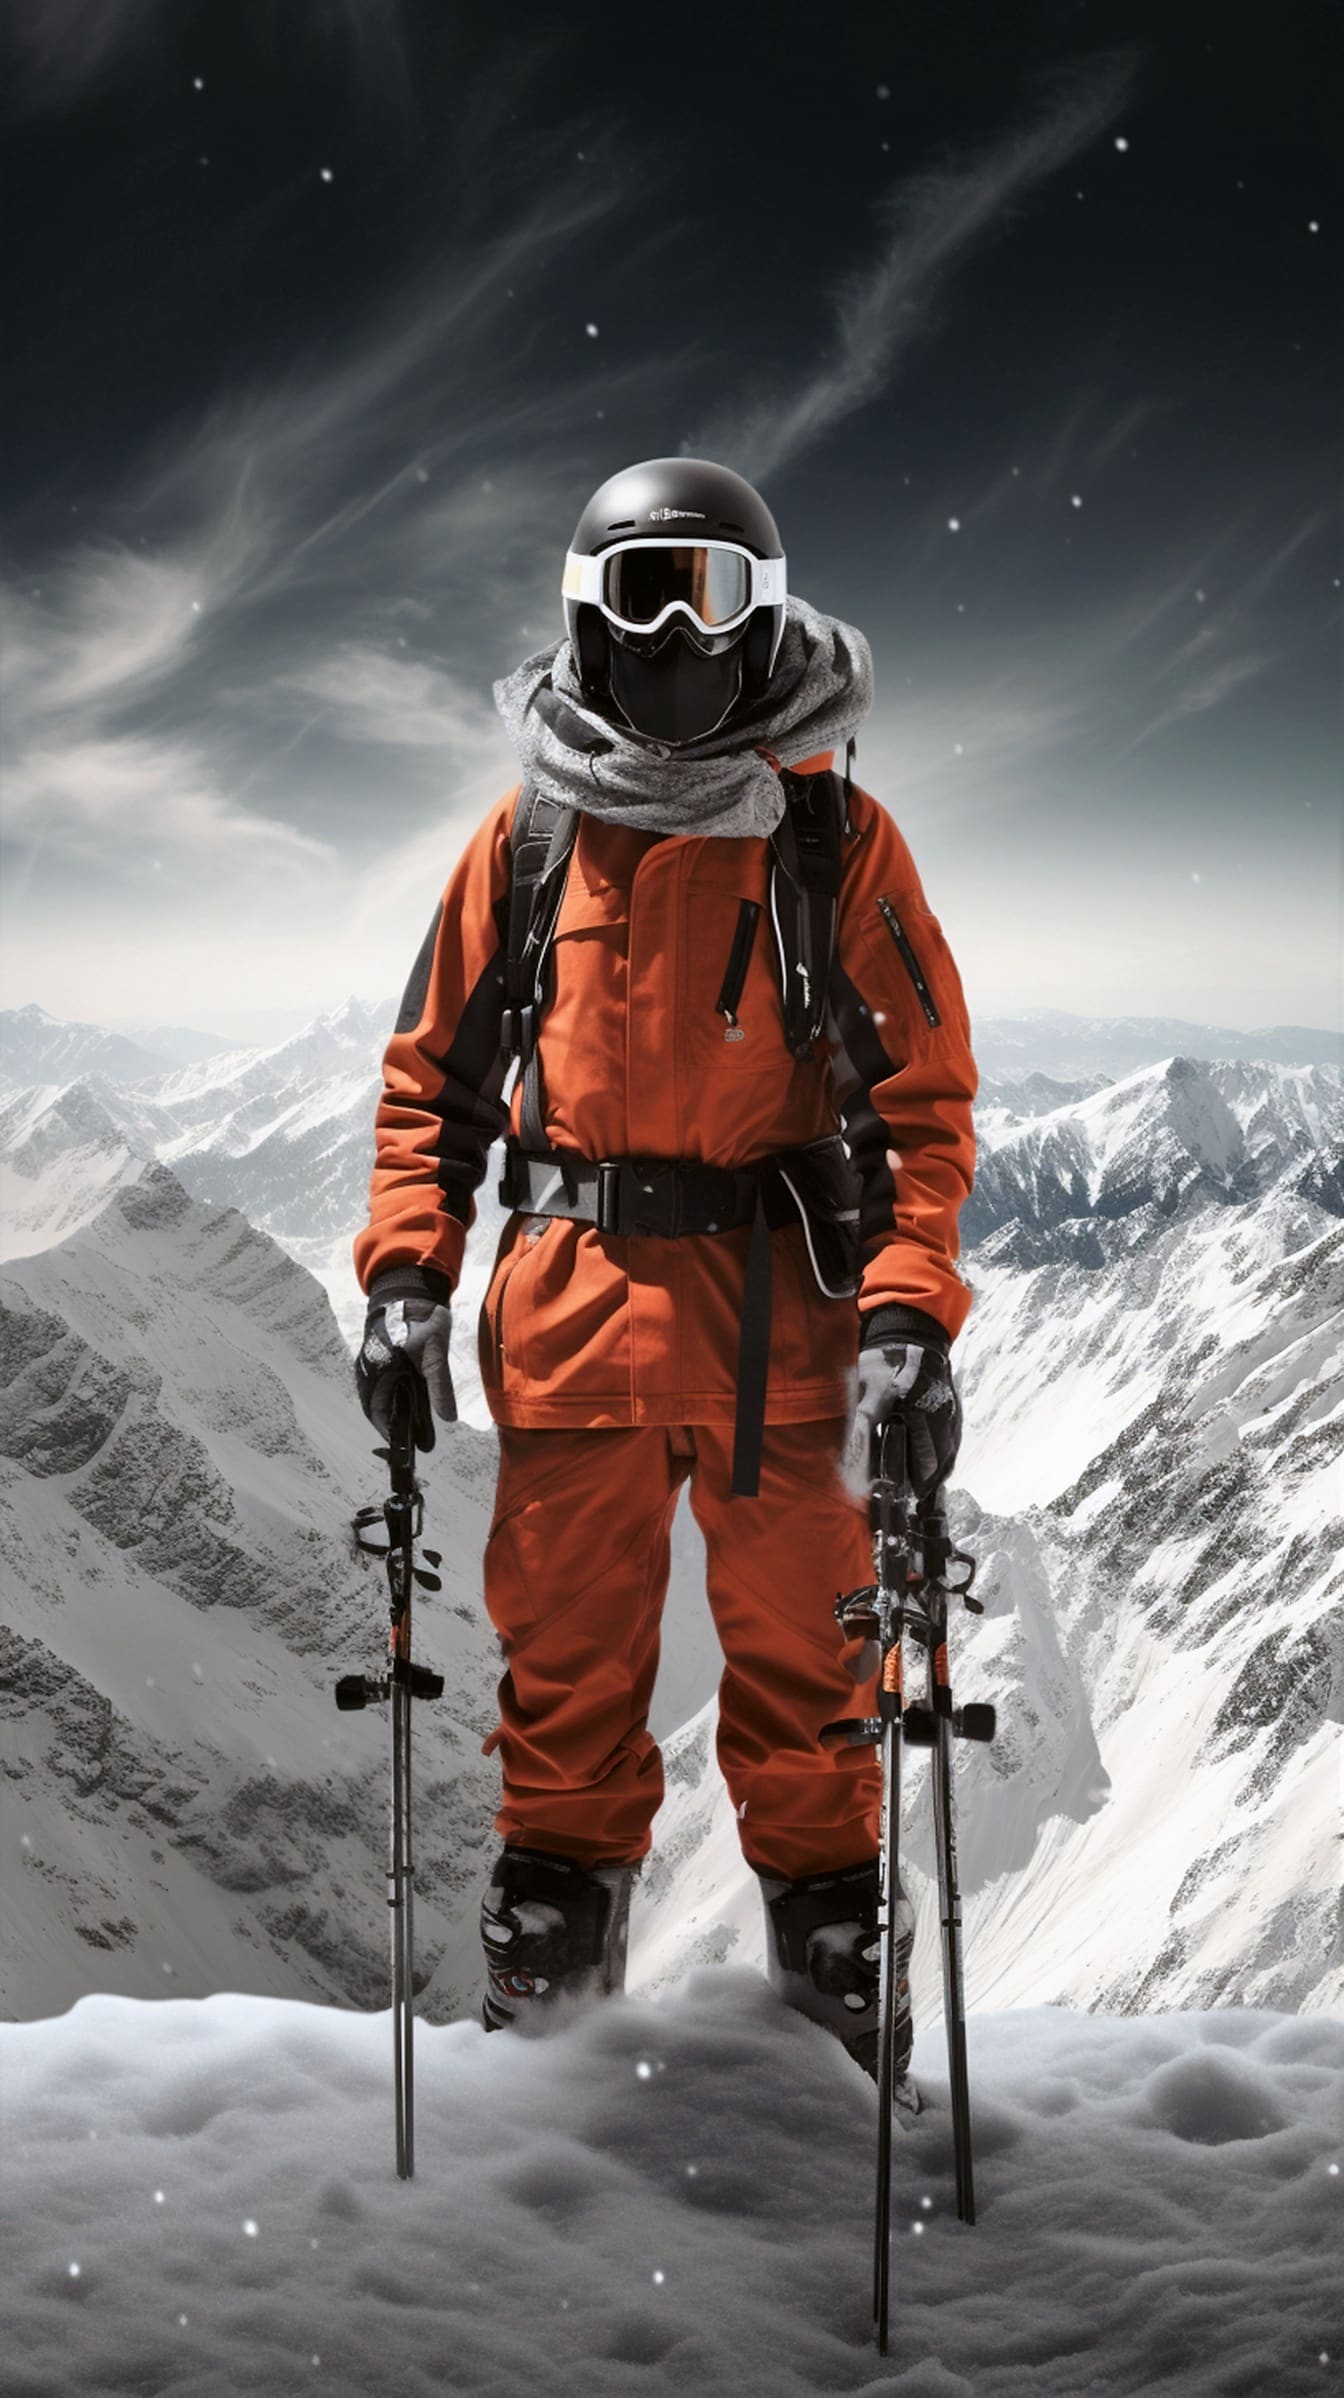 Лыжник-экстремал, стоящий на вершине горной вершины